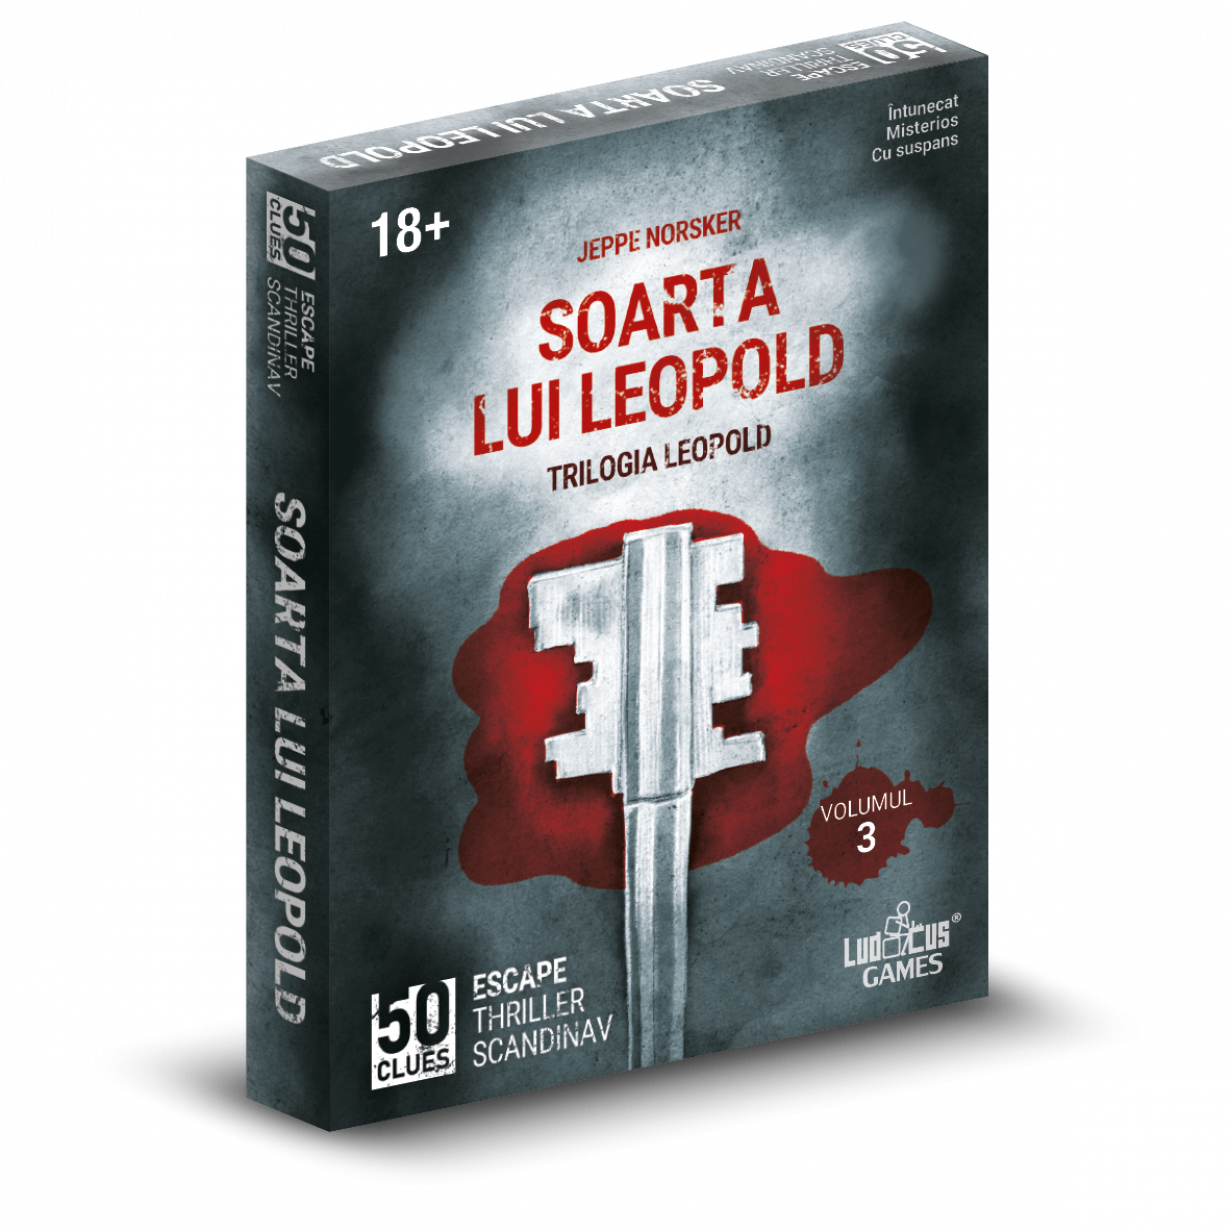 Joc - 50 Clues - Soarta lui Leopold | Ludicus image0